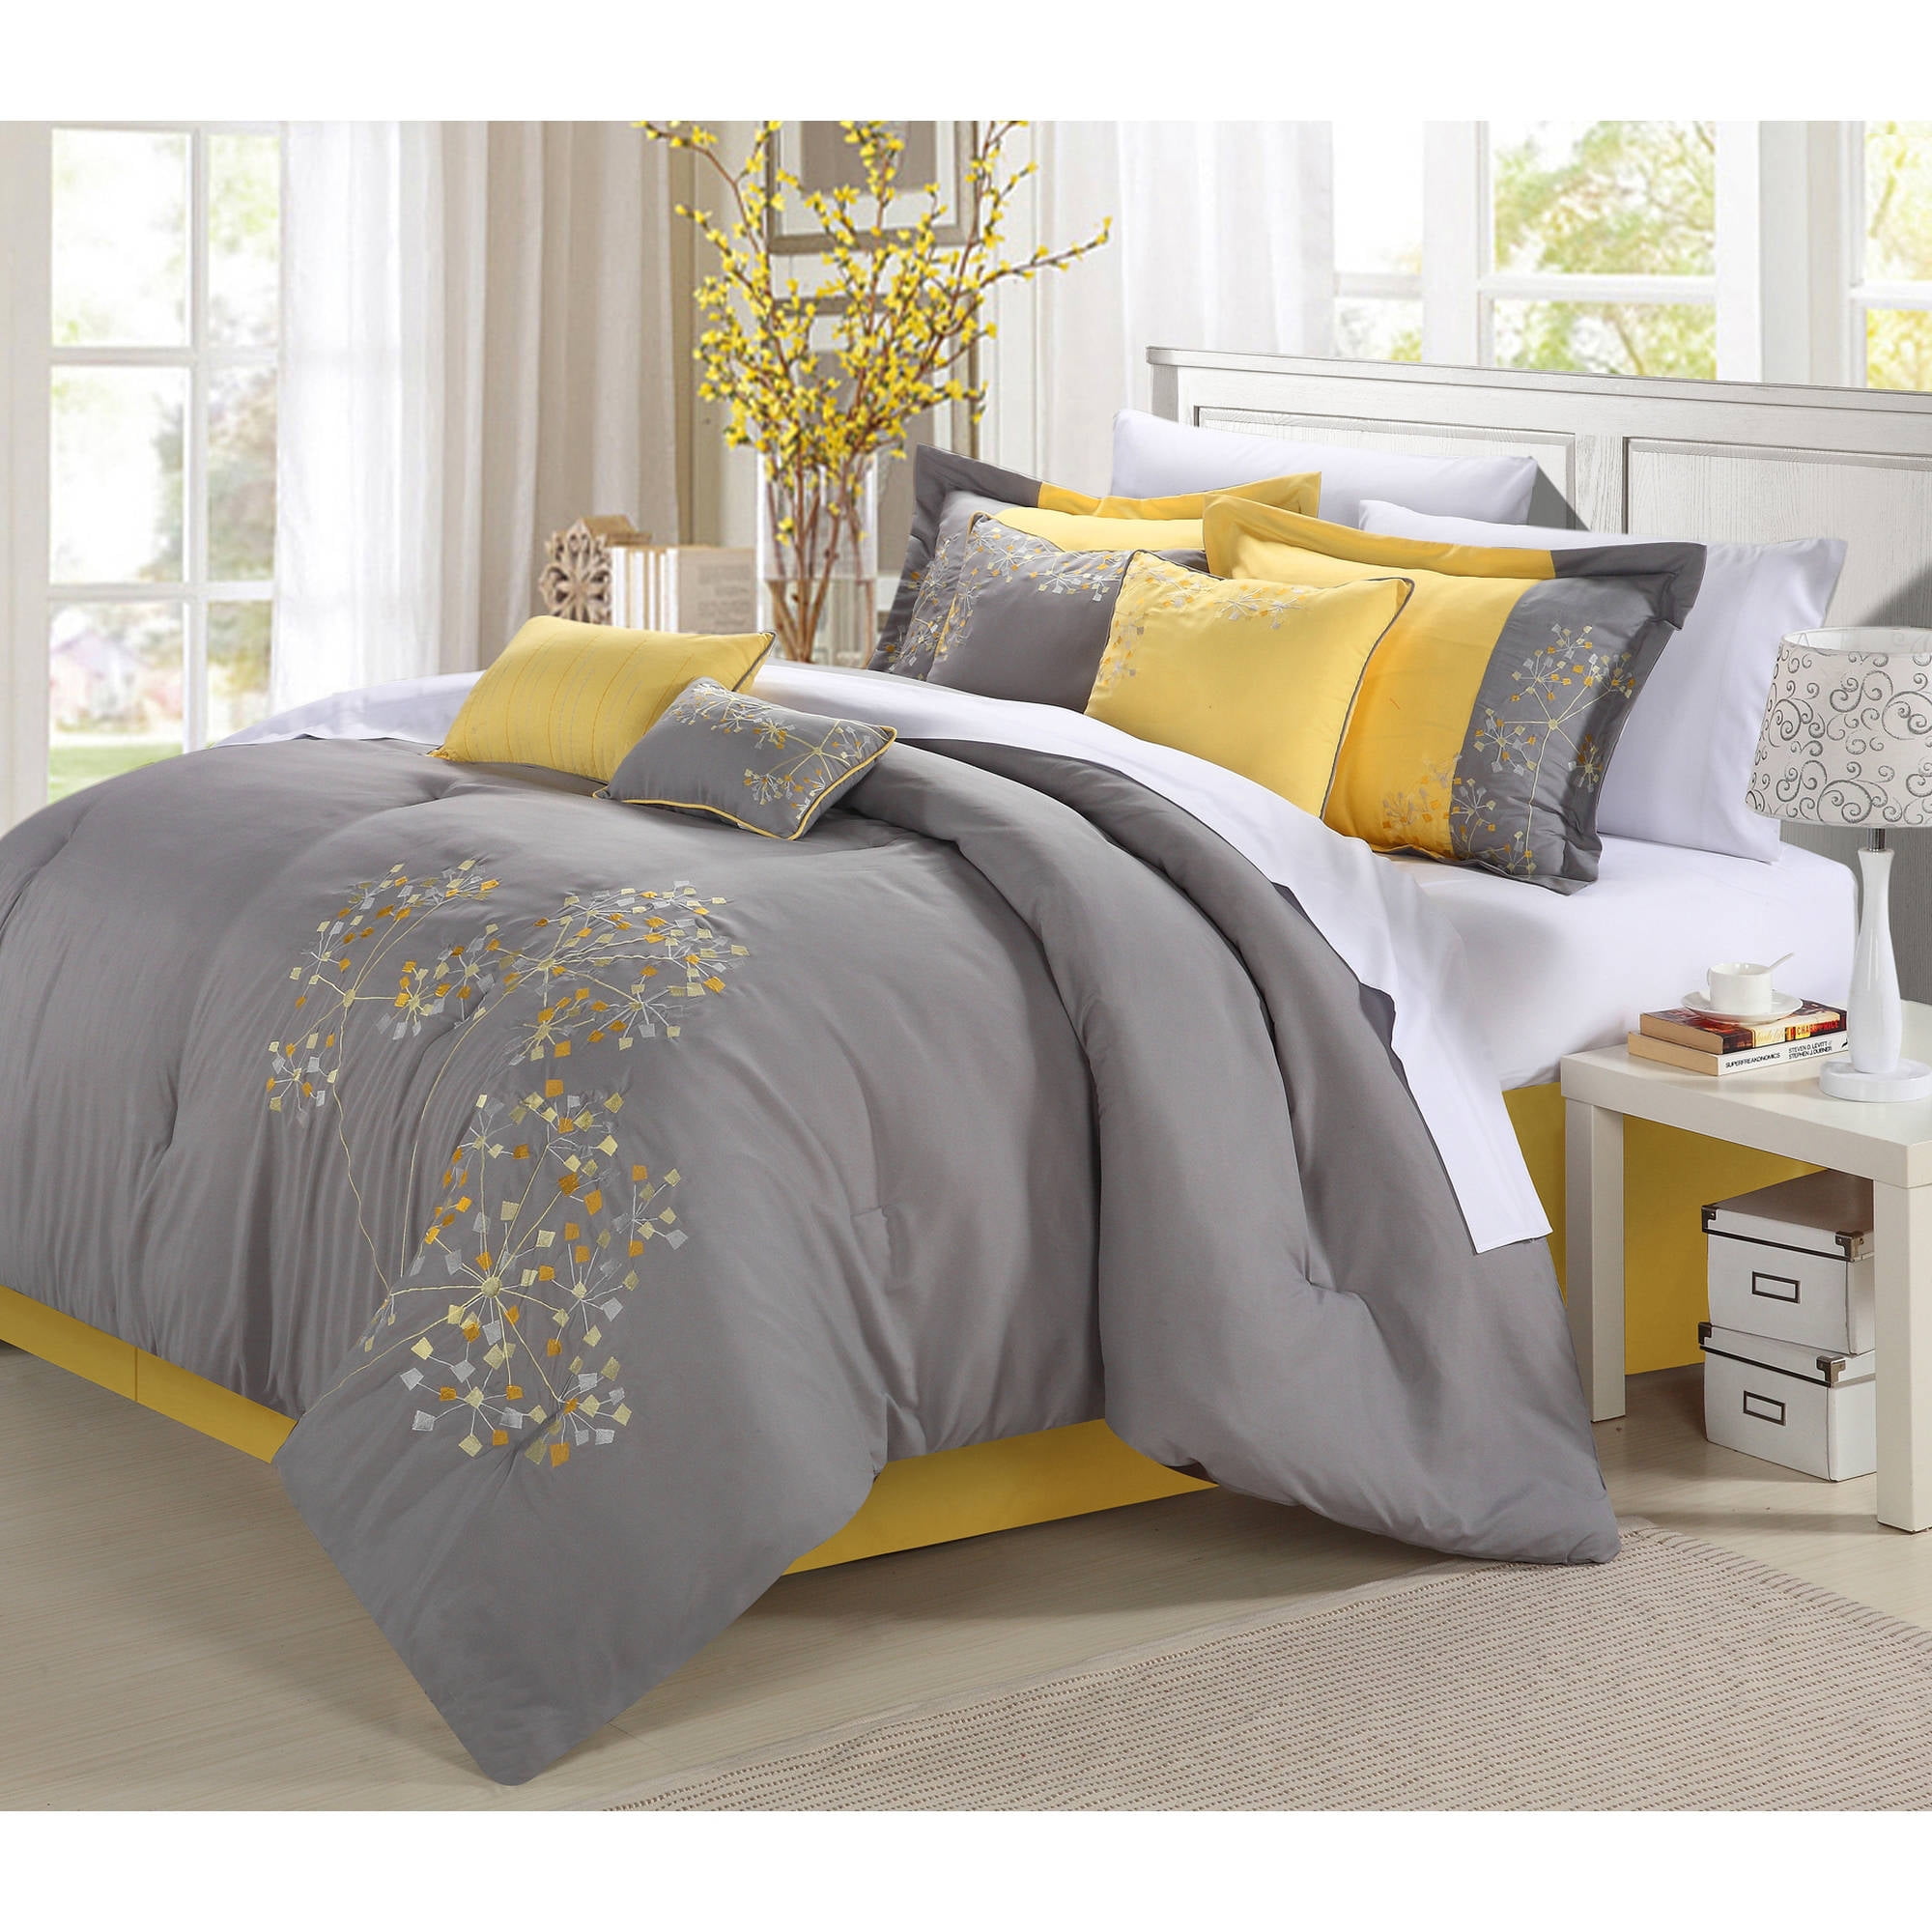 nice affordable comforter sets